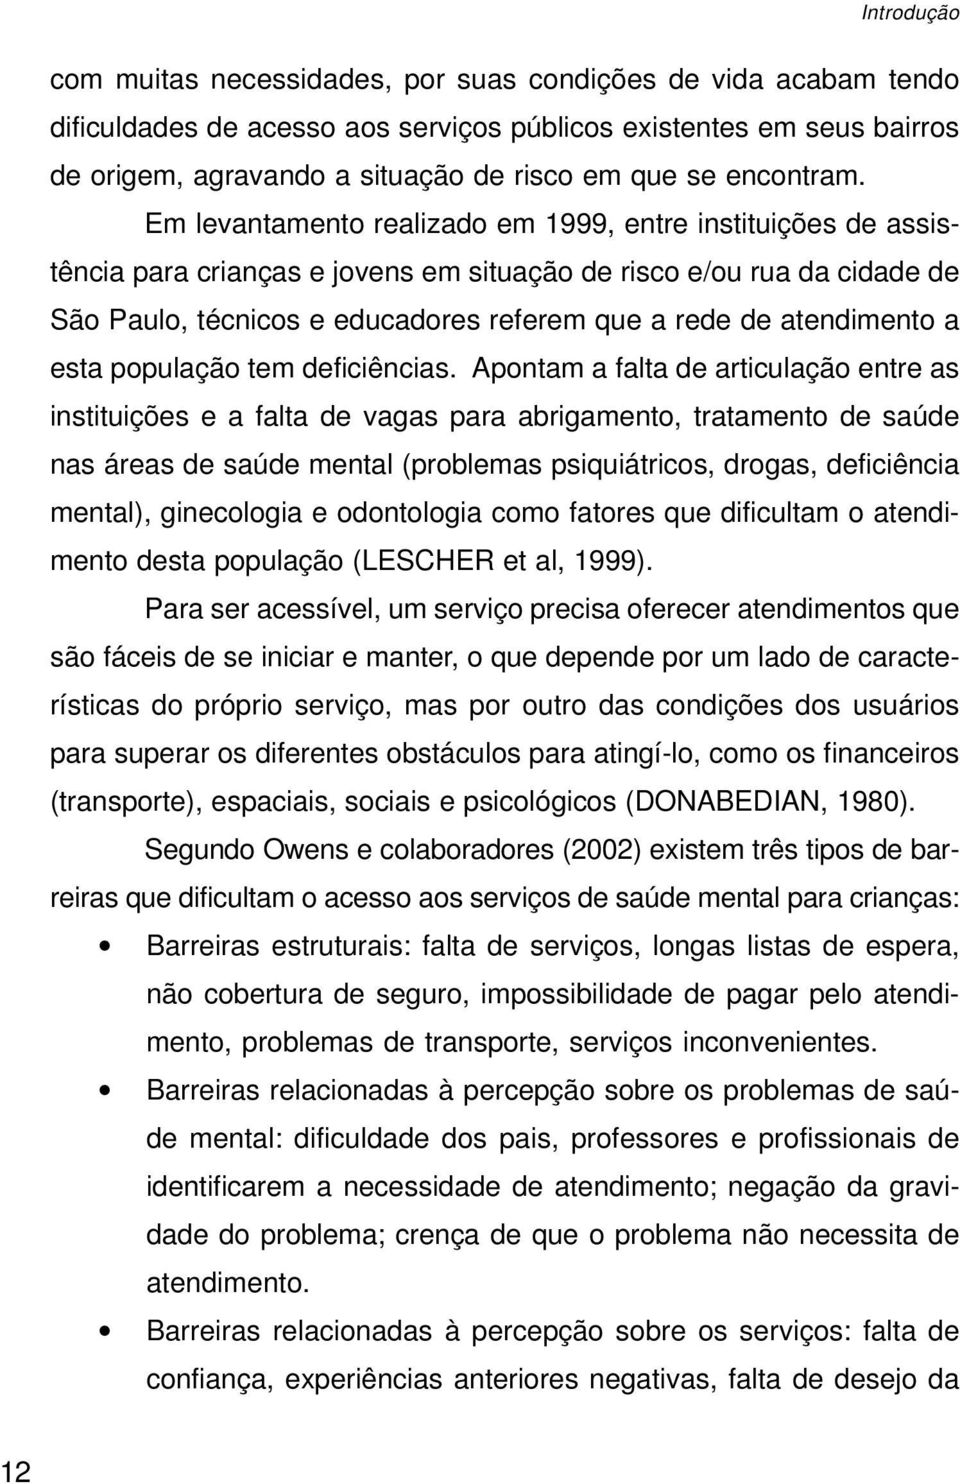 Em levantamento realizado em 1999, entre instituições de assistência para crianças e jovens em situação de risco e/ou rua da cidade de São Paulo, técnicos e educadores referem que a rede de